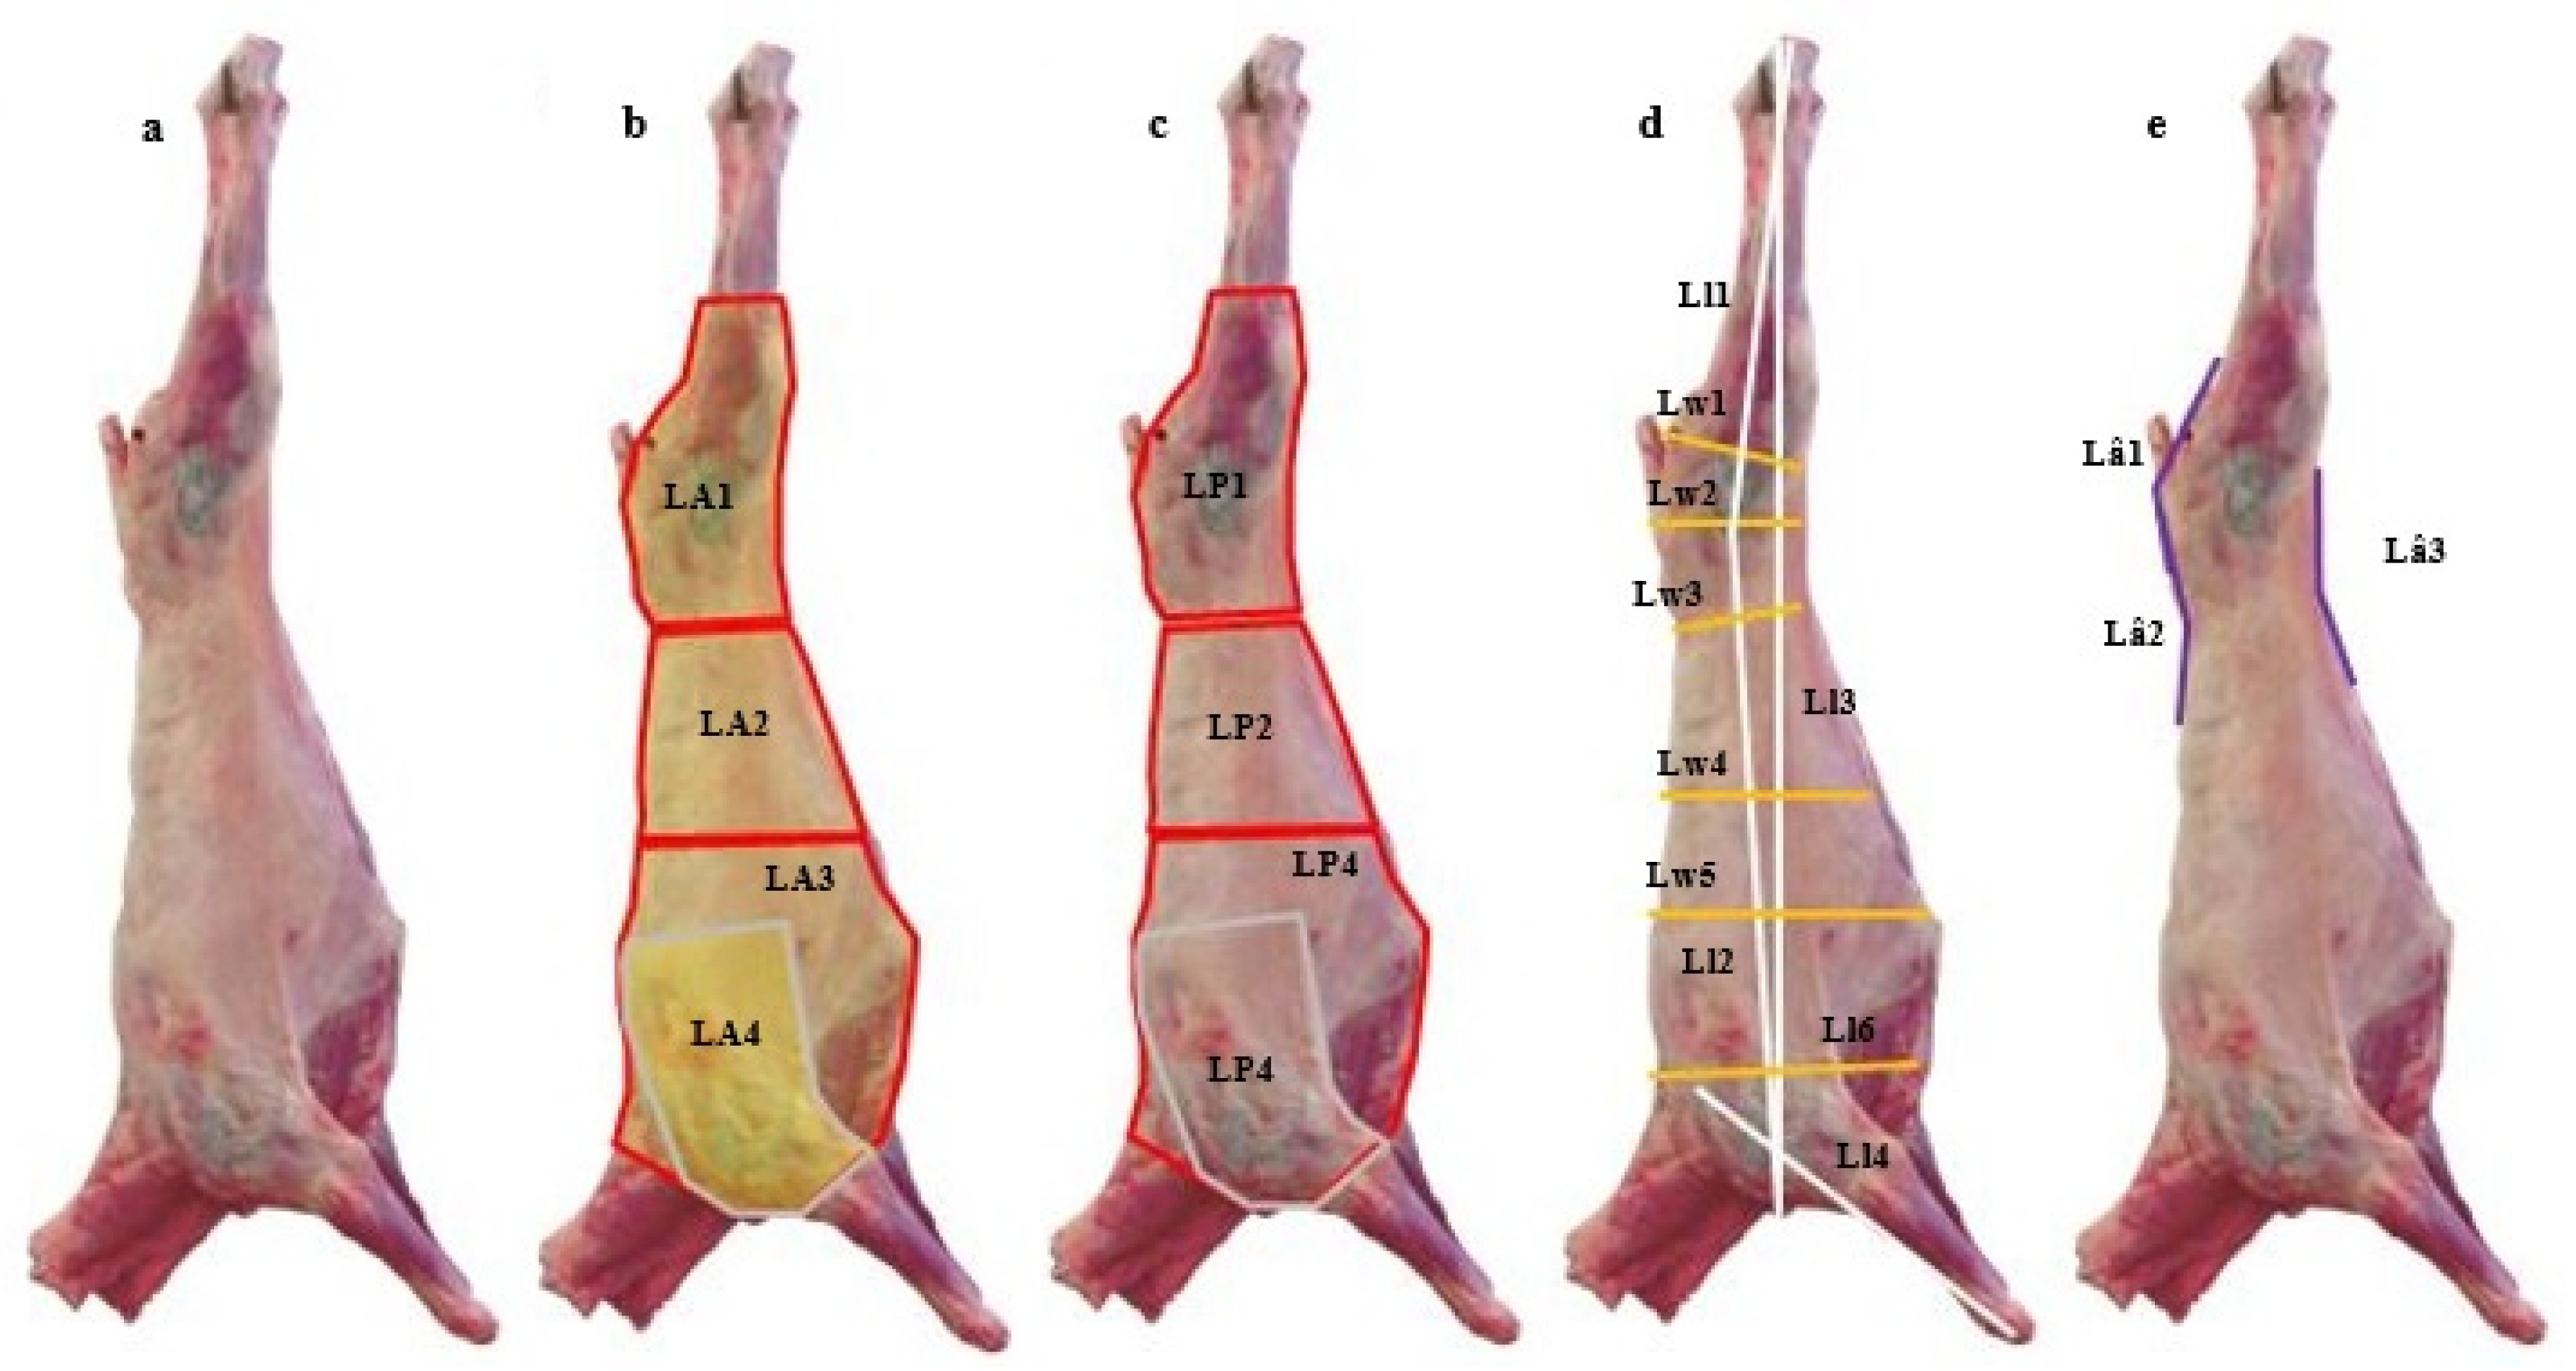 Processing data: carcass weight (kg), breast weight (g), carcass